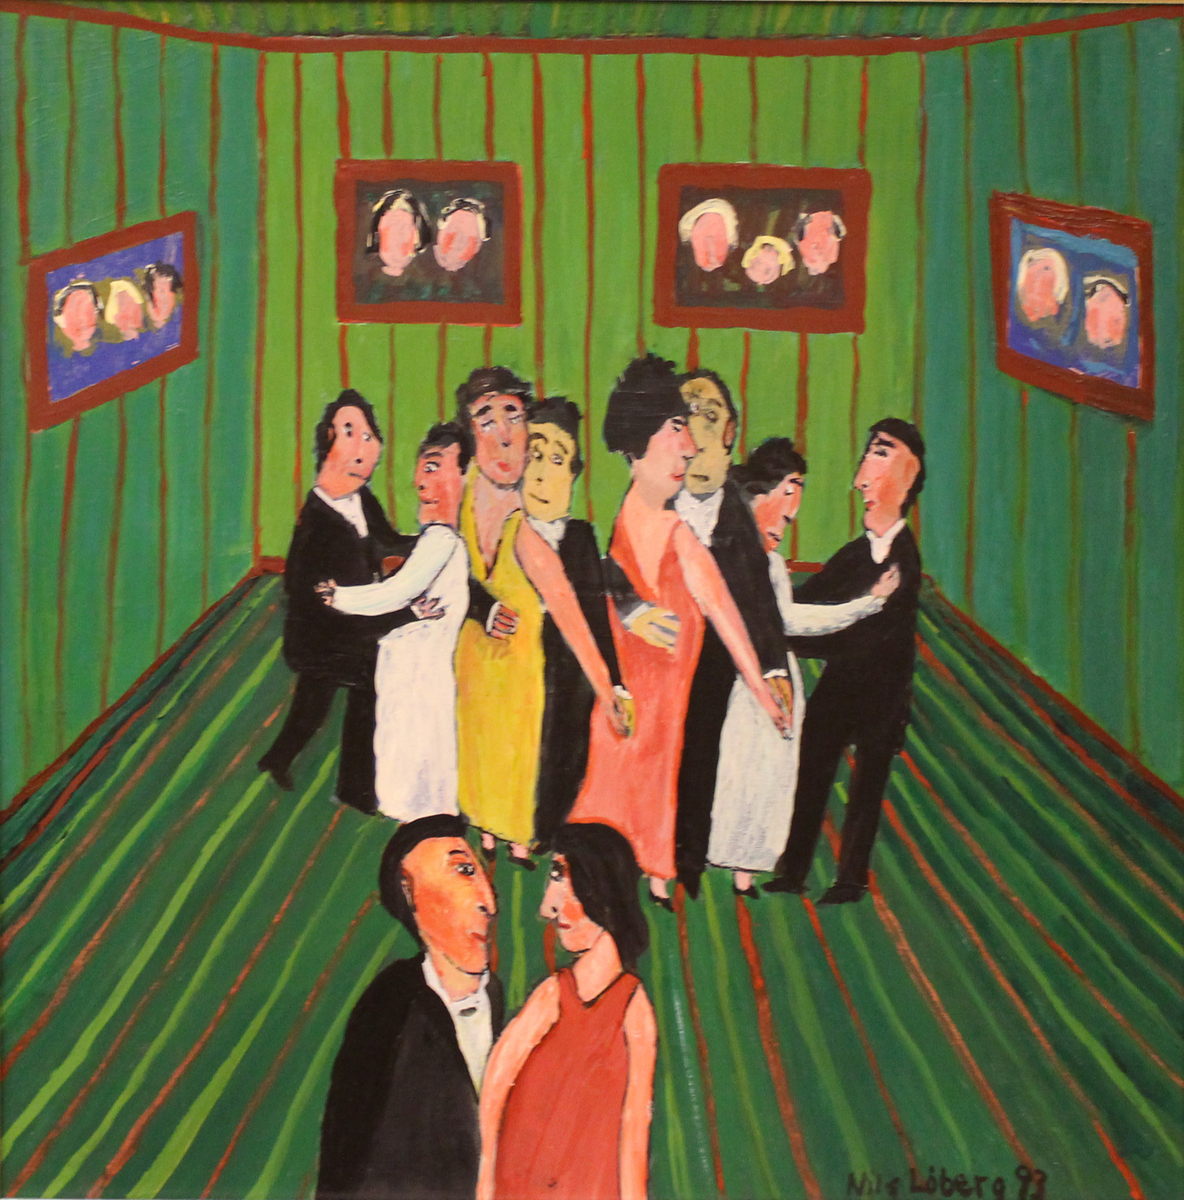 Menn og kvinner danser sammen i grønt rom med portrettmalerier på veggene.